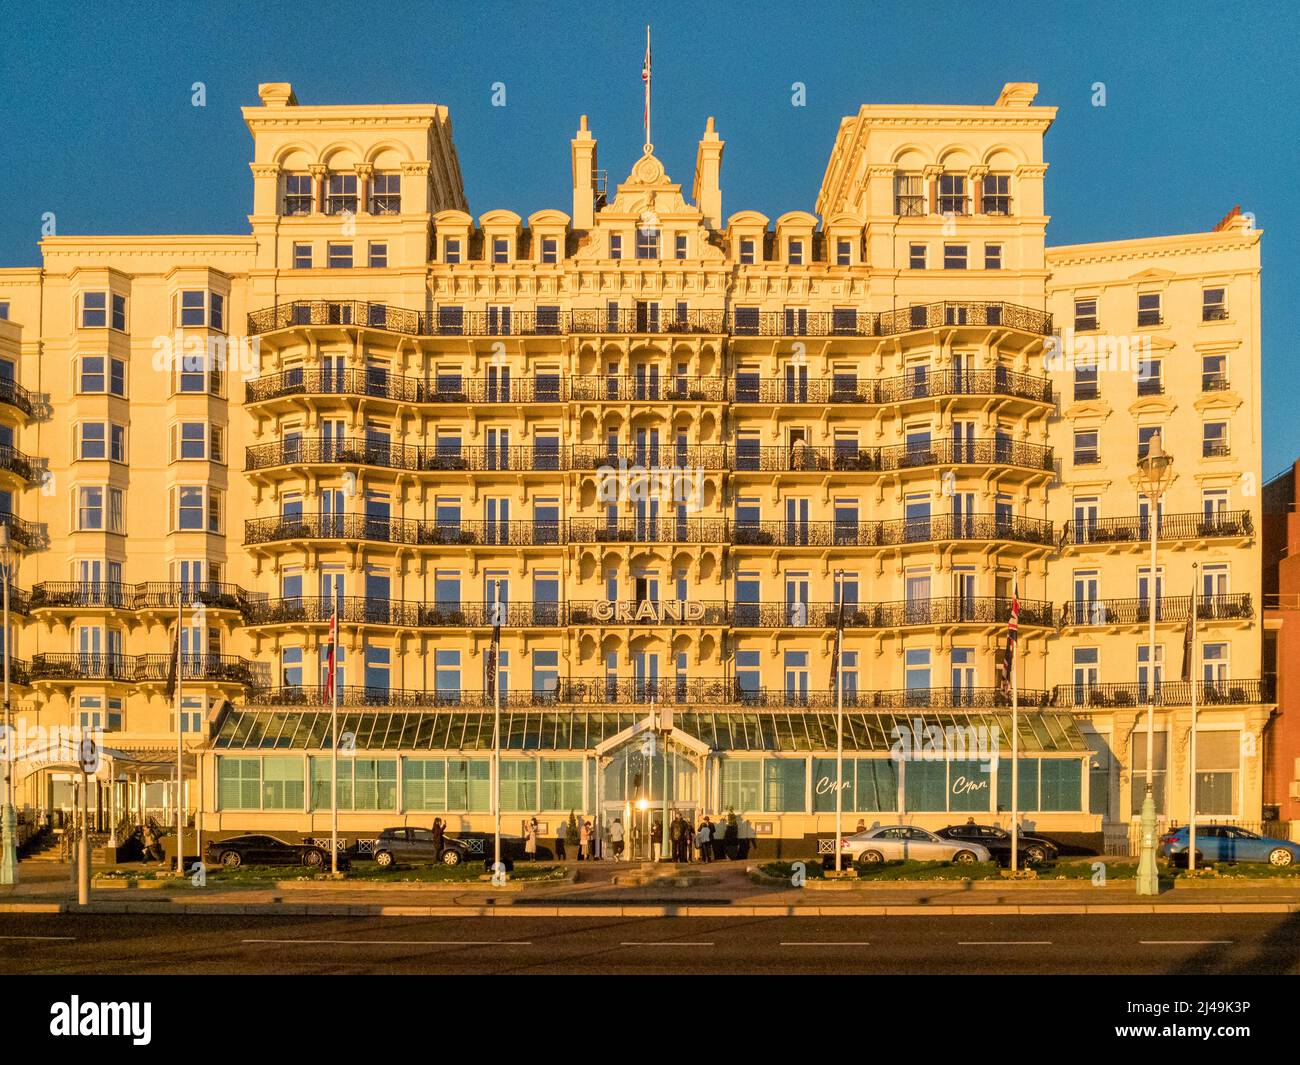 13 de enero de 2022: Brighton, East Sussex, Reino Unido - El Grand Hotel, Brighton, iluminado por el sol en una clara tarde de invierno. Foto de stock